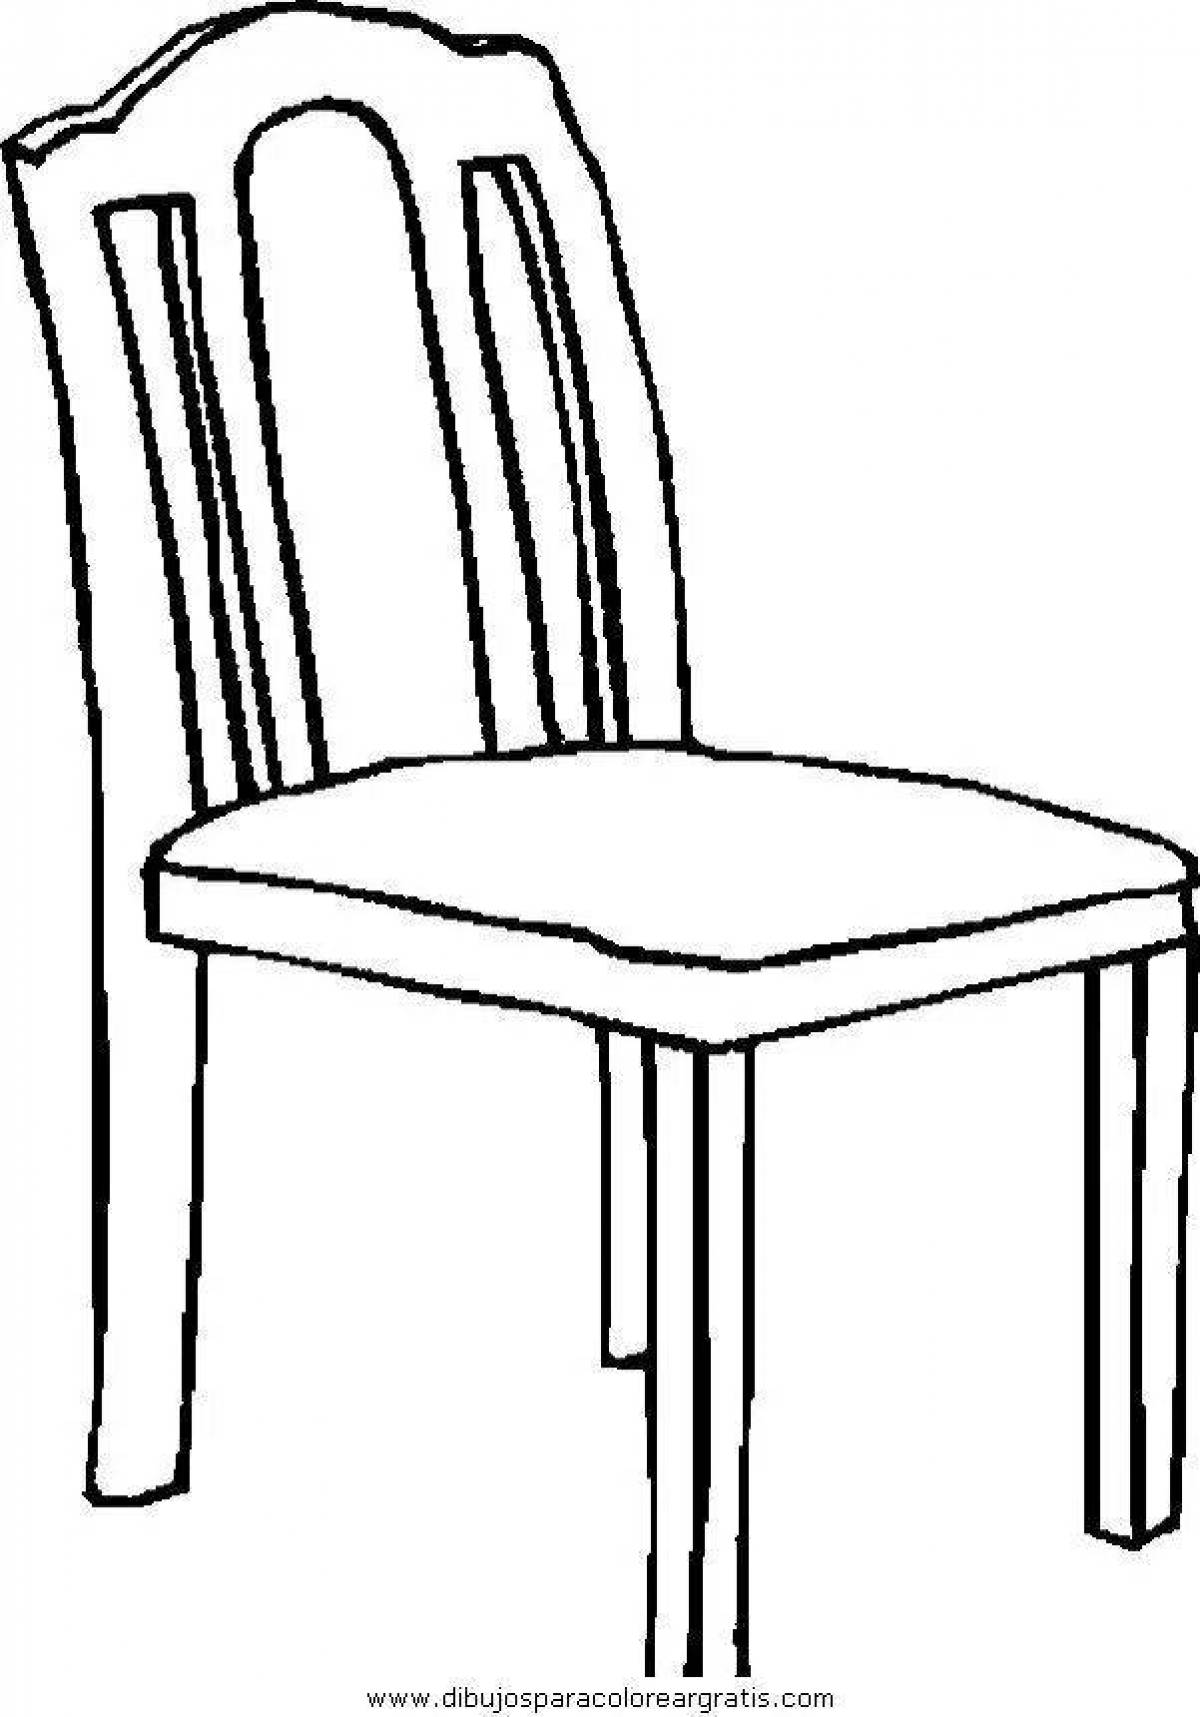 Раскраска анимированный стульчик для кормления